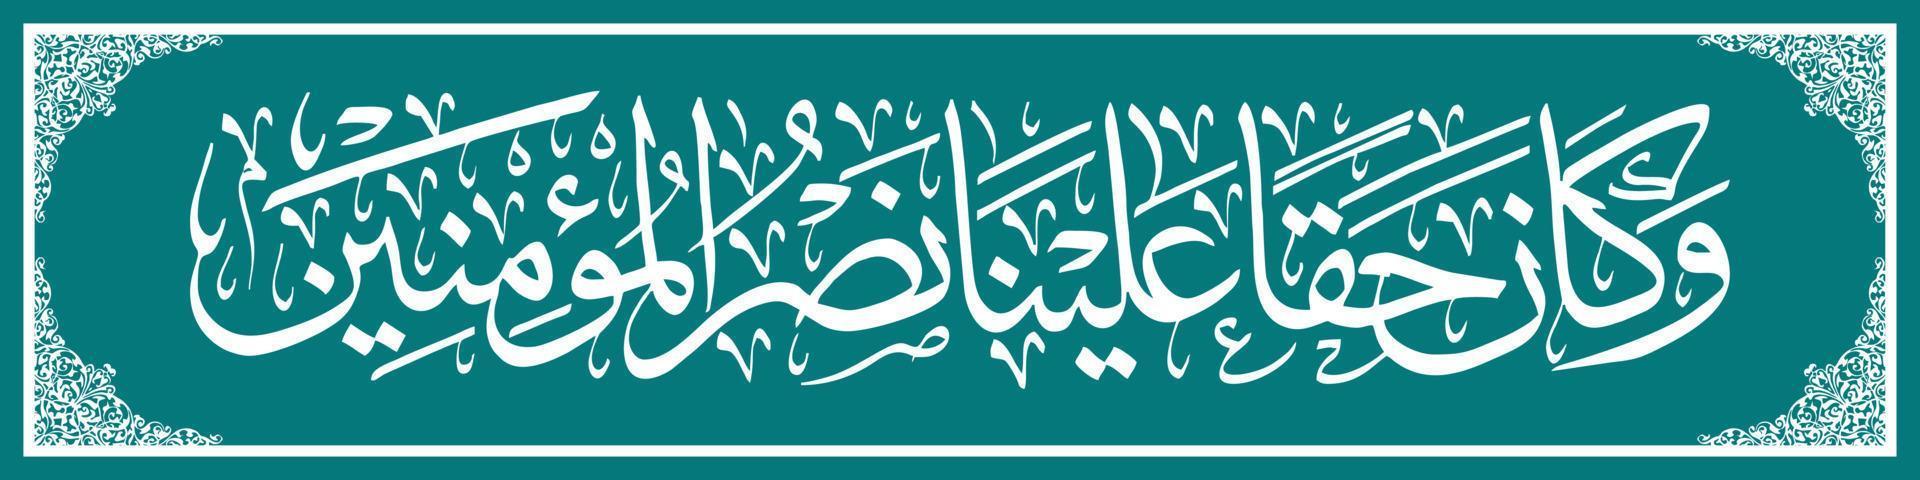 caligrafia árabe al quran surah ar rum versículo 47, tradução e é nosso direito ajudar aqueles que acreditam. vetor